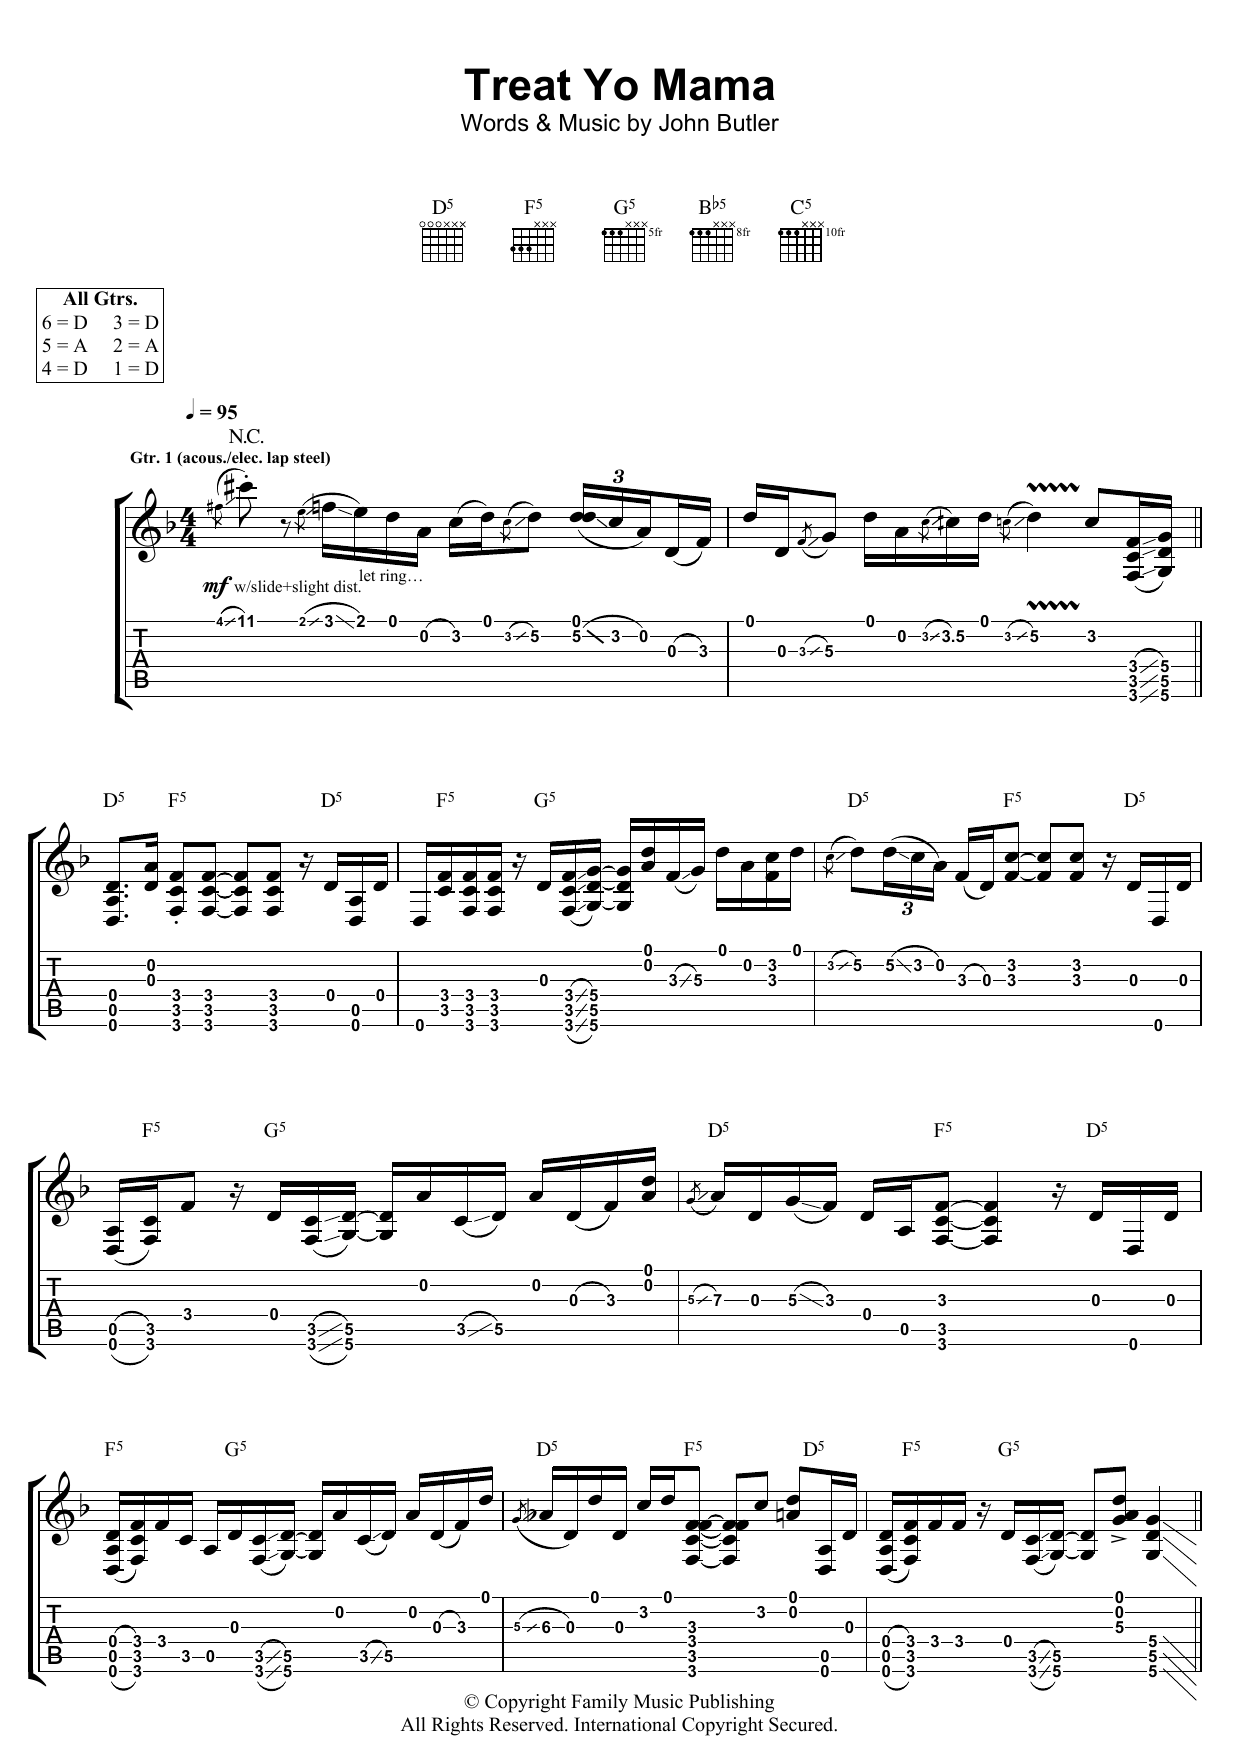 John Butler Treat Yo Mama Sheet Music Notes & Chords for Guitar Tab - Download or Print PDF